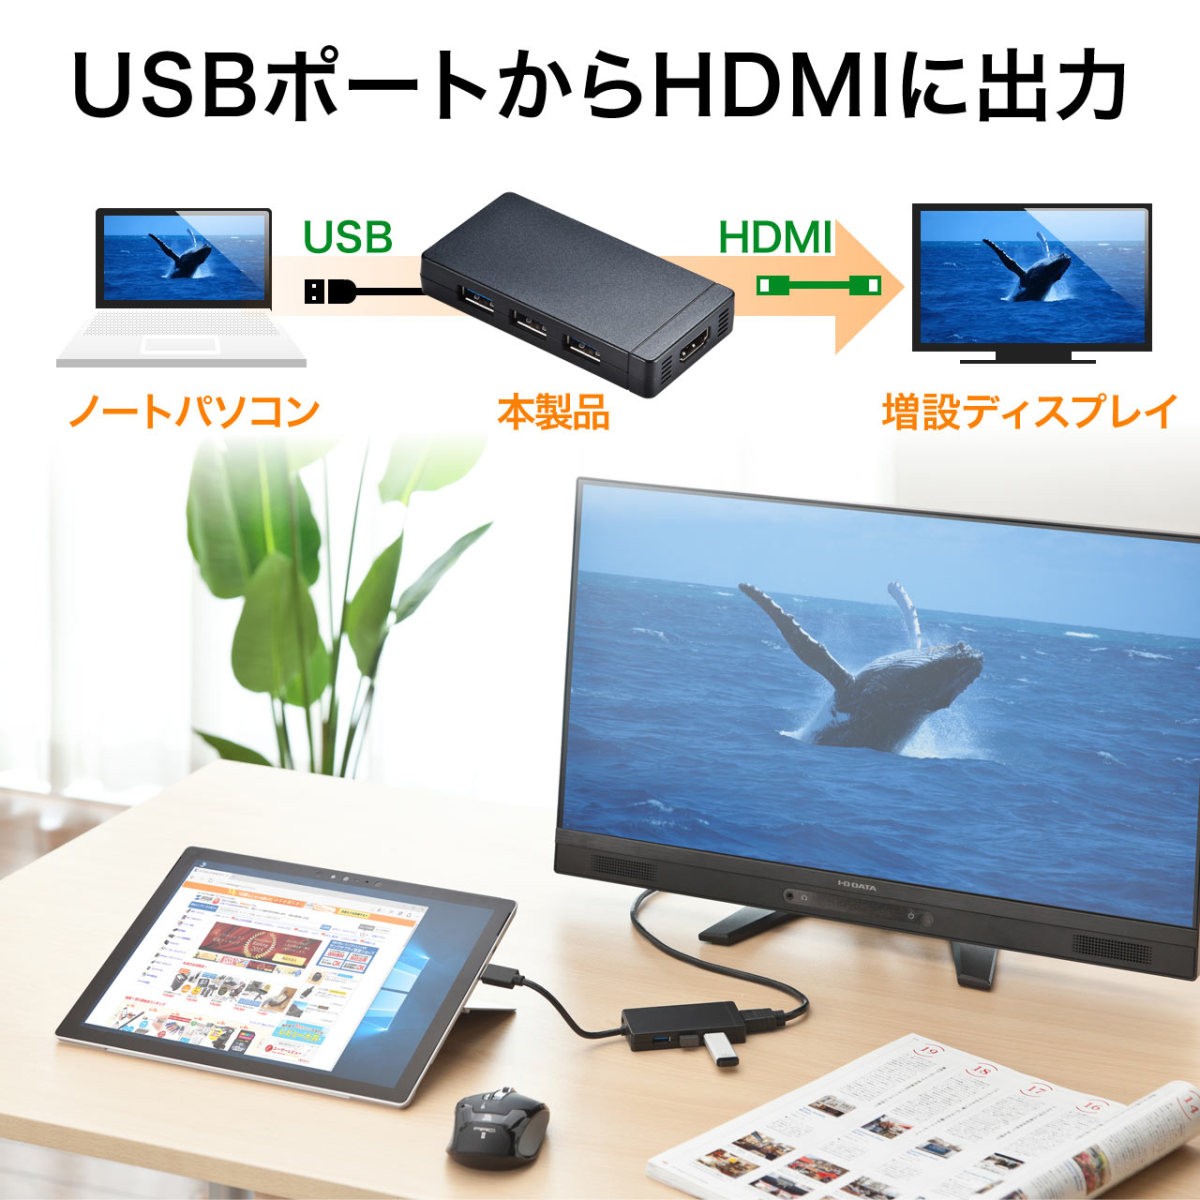 USB HDMI 変換 アダプタ USB3.0 USBハブ ディスプレイ モニター 液晶 増設 追加 HDMI出力 大画面 ドッキングステーション バスパワー 電源不要 400-HUB027